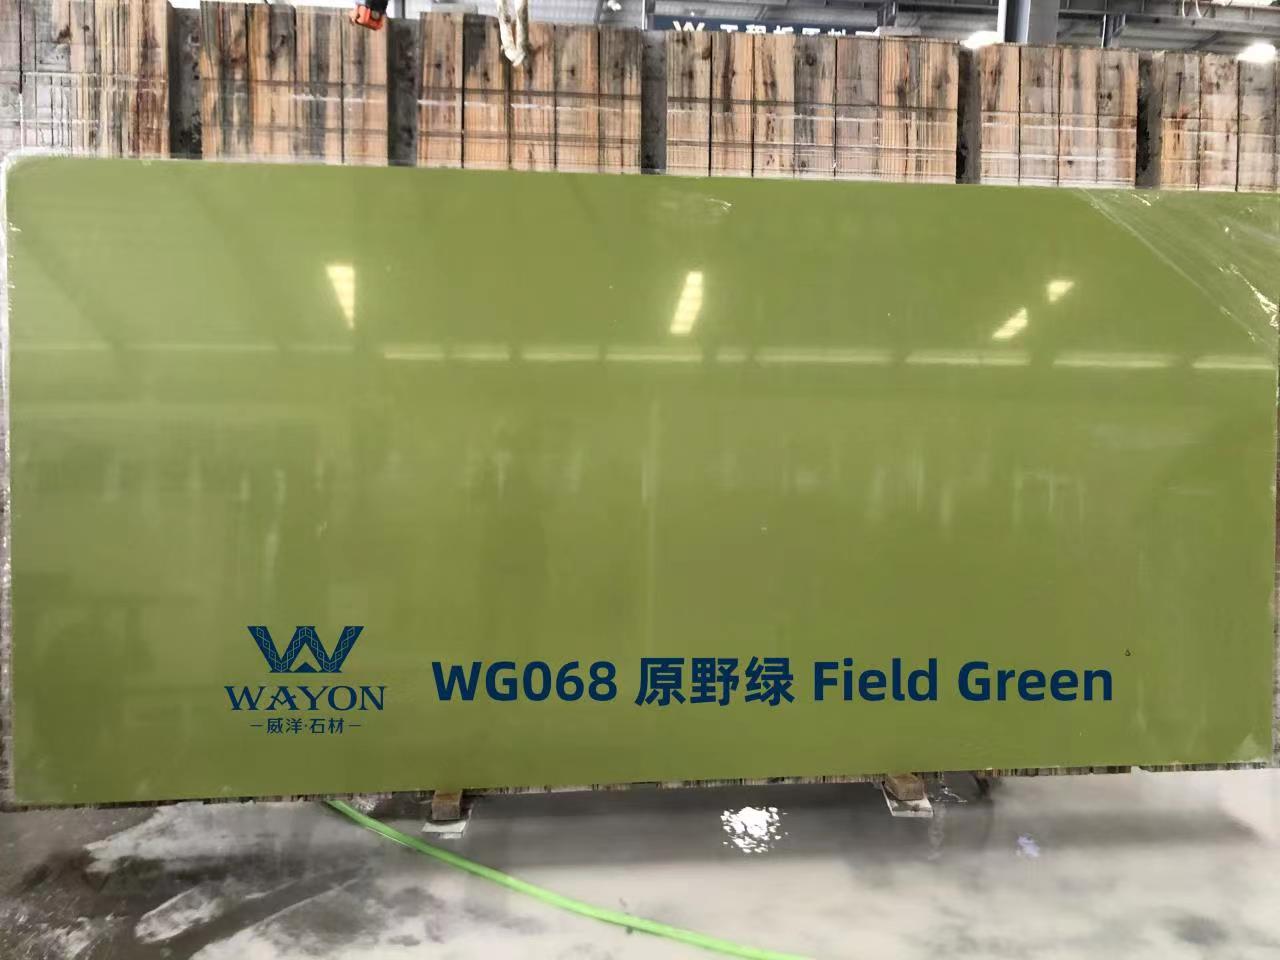 WG068 Field Green